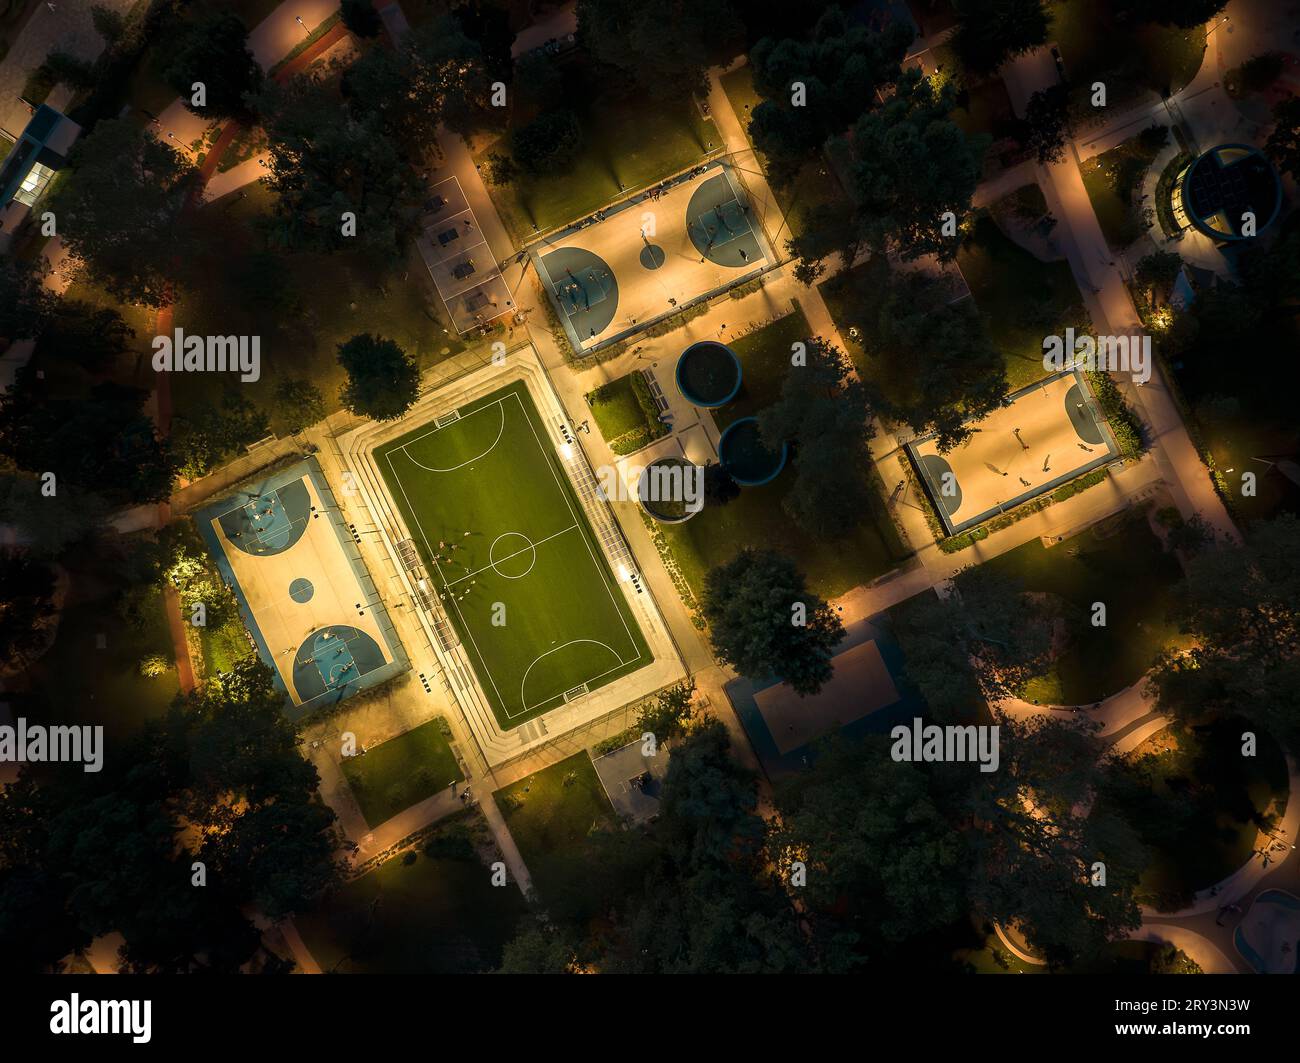 Campi sportivi in un parco con vista aerea. Foto serale su foutball, campi da pallacanestro e tavoli da ping pong. Parco ricreativo illuminato. Foto Stock